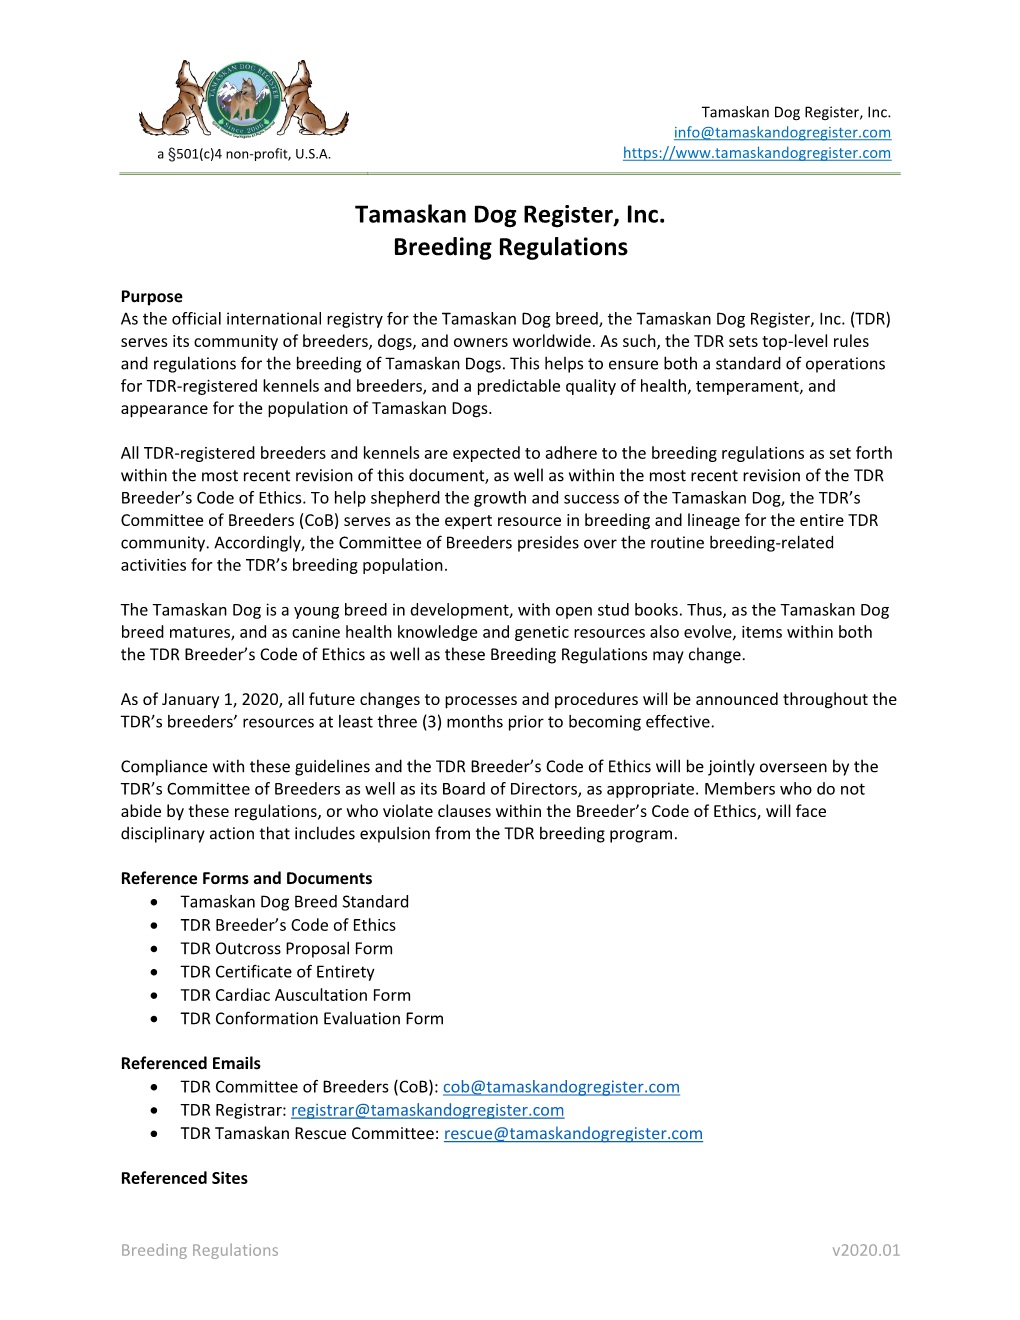 Tamaskan Dog Register, Inc. Breeding Regulations